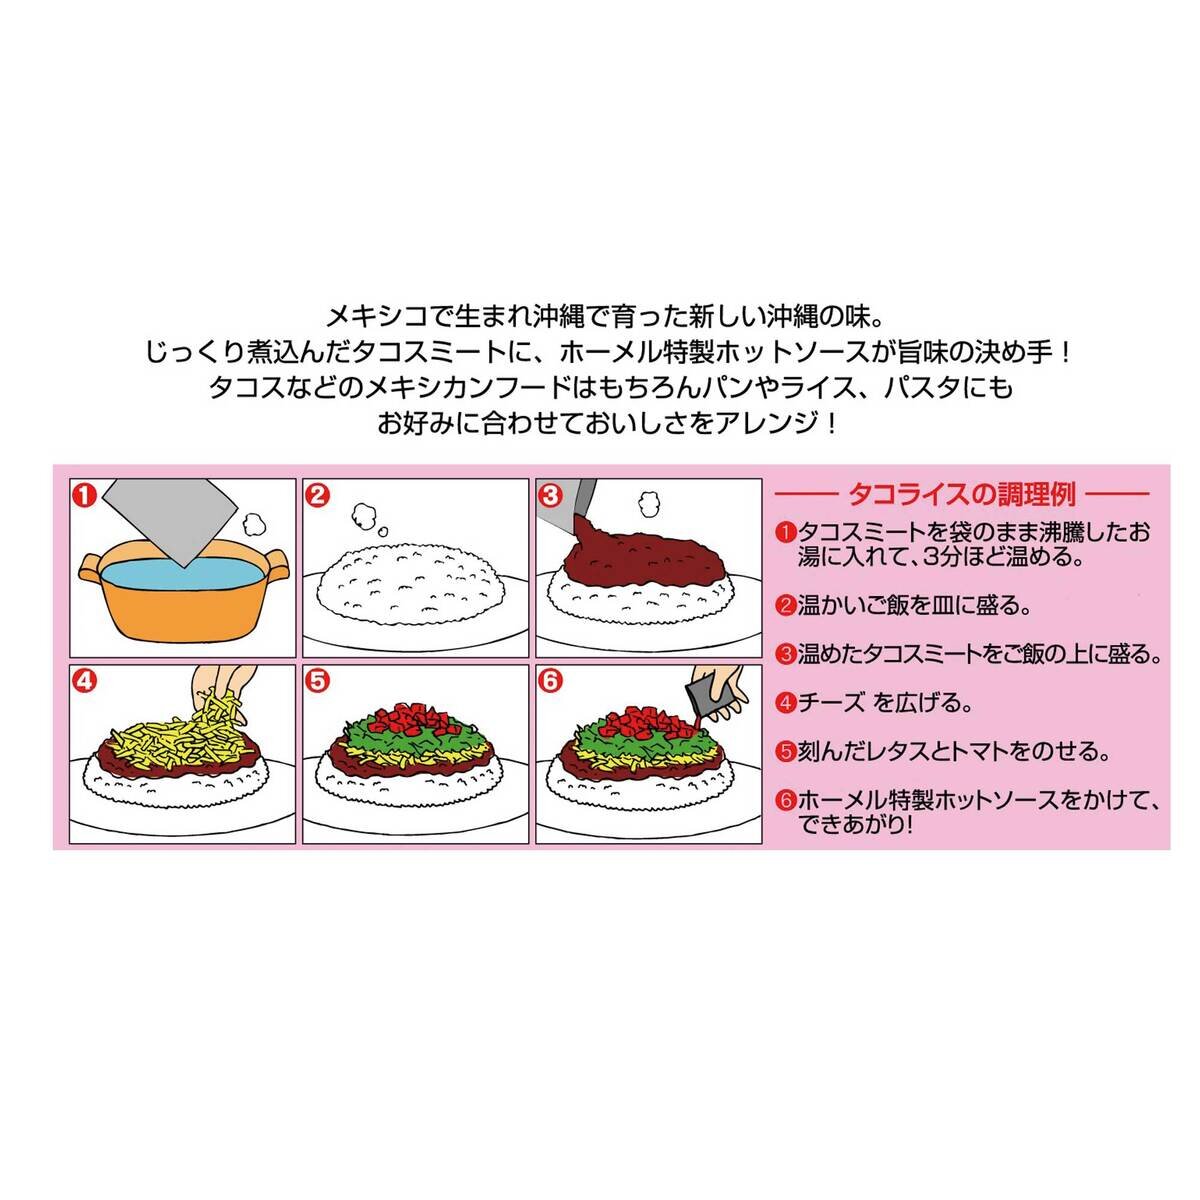 沖縄ホーメル タコライス 12食入り | Costco Japan